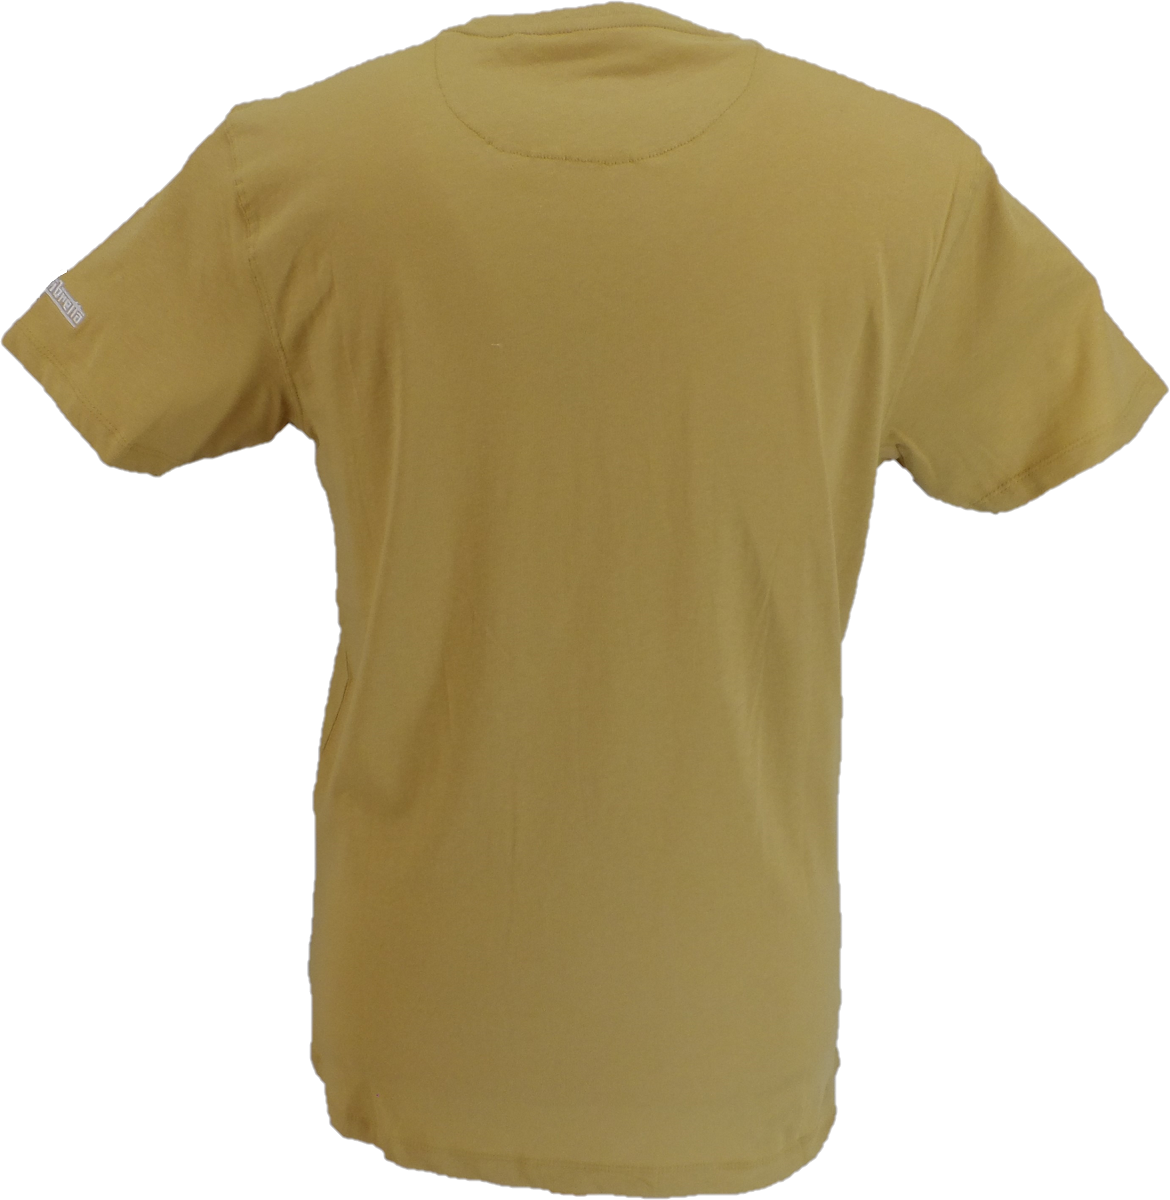 Camiseta con estampado retro vintage marrón arena Lambretta